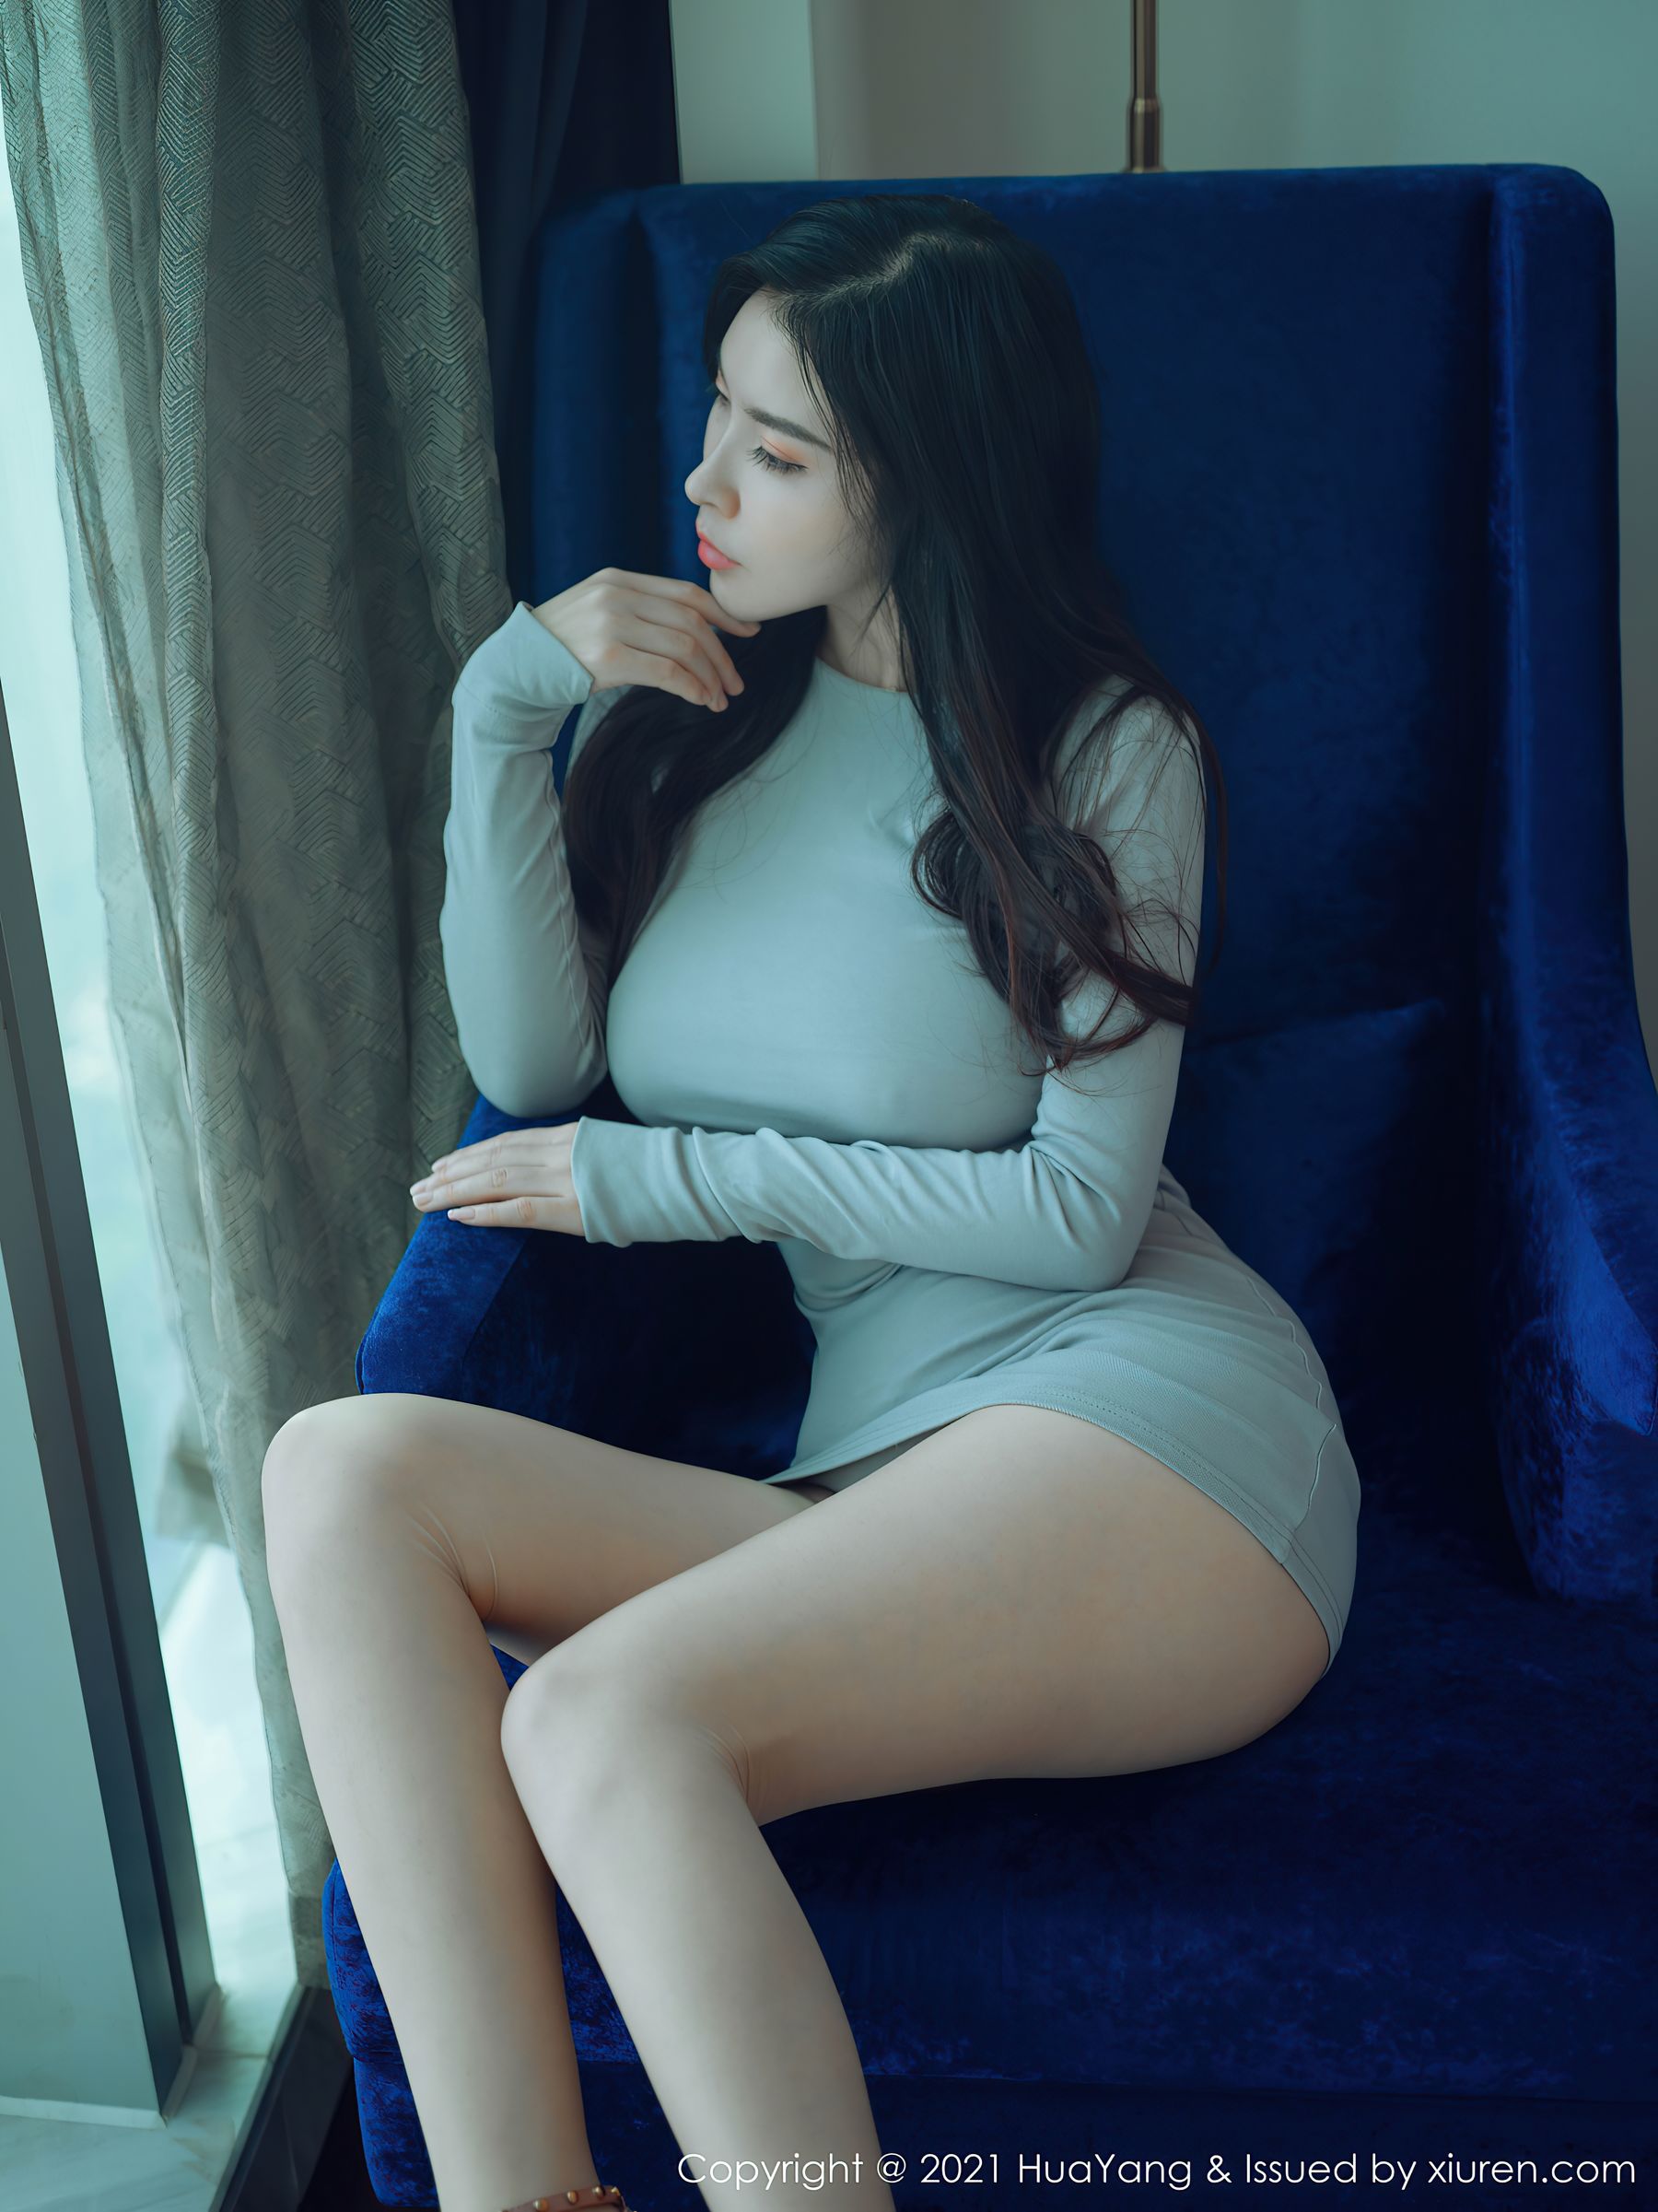 [花漾 huayang] Vol.363 Newcomer model @ 惟 依 Coco sexy photo